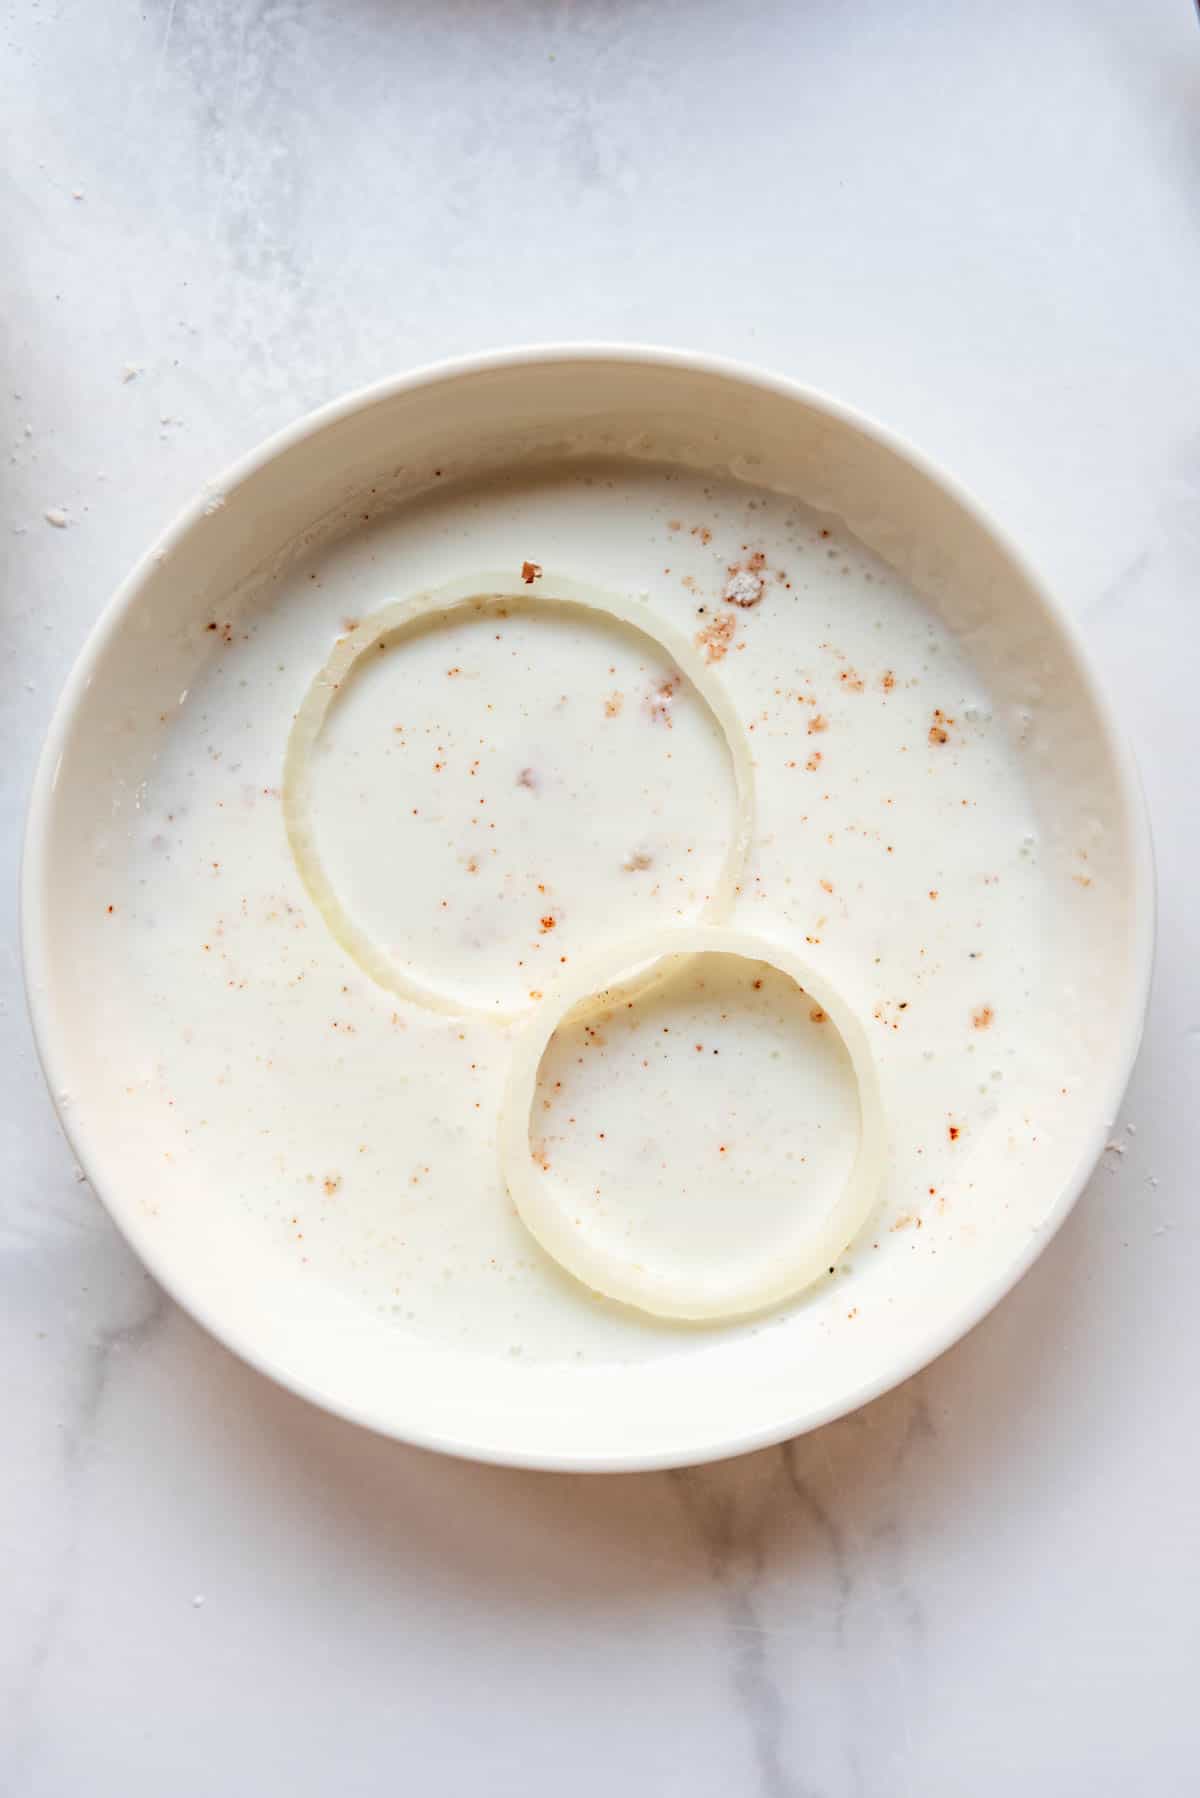 Soaking onion rings in buttermilk.